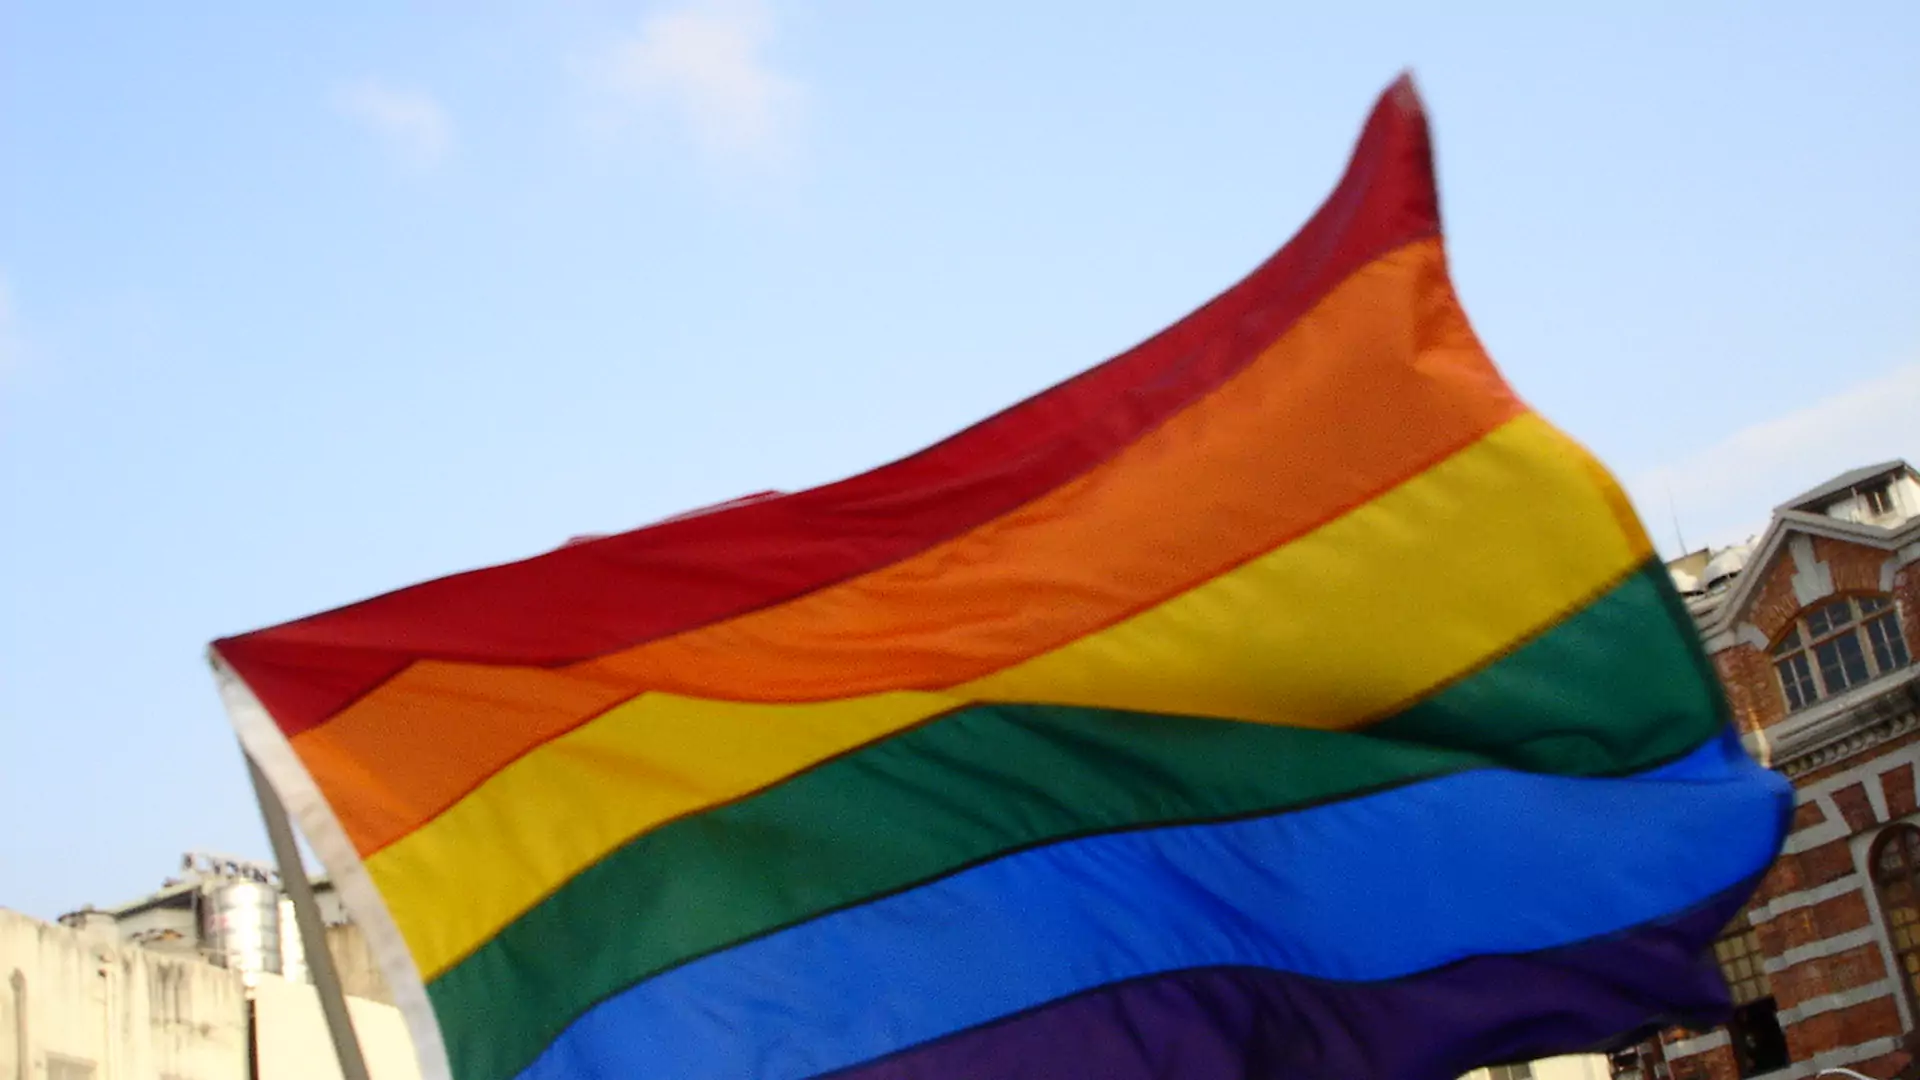 Małe zwycięstwa w walce z homofobią. Sąd skazał trenera, który odmówił zajęć grupie LGBTQ